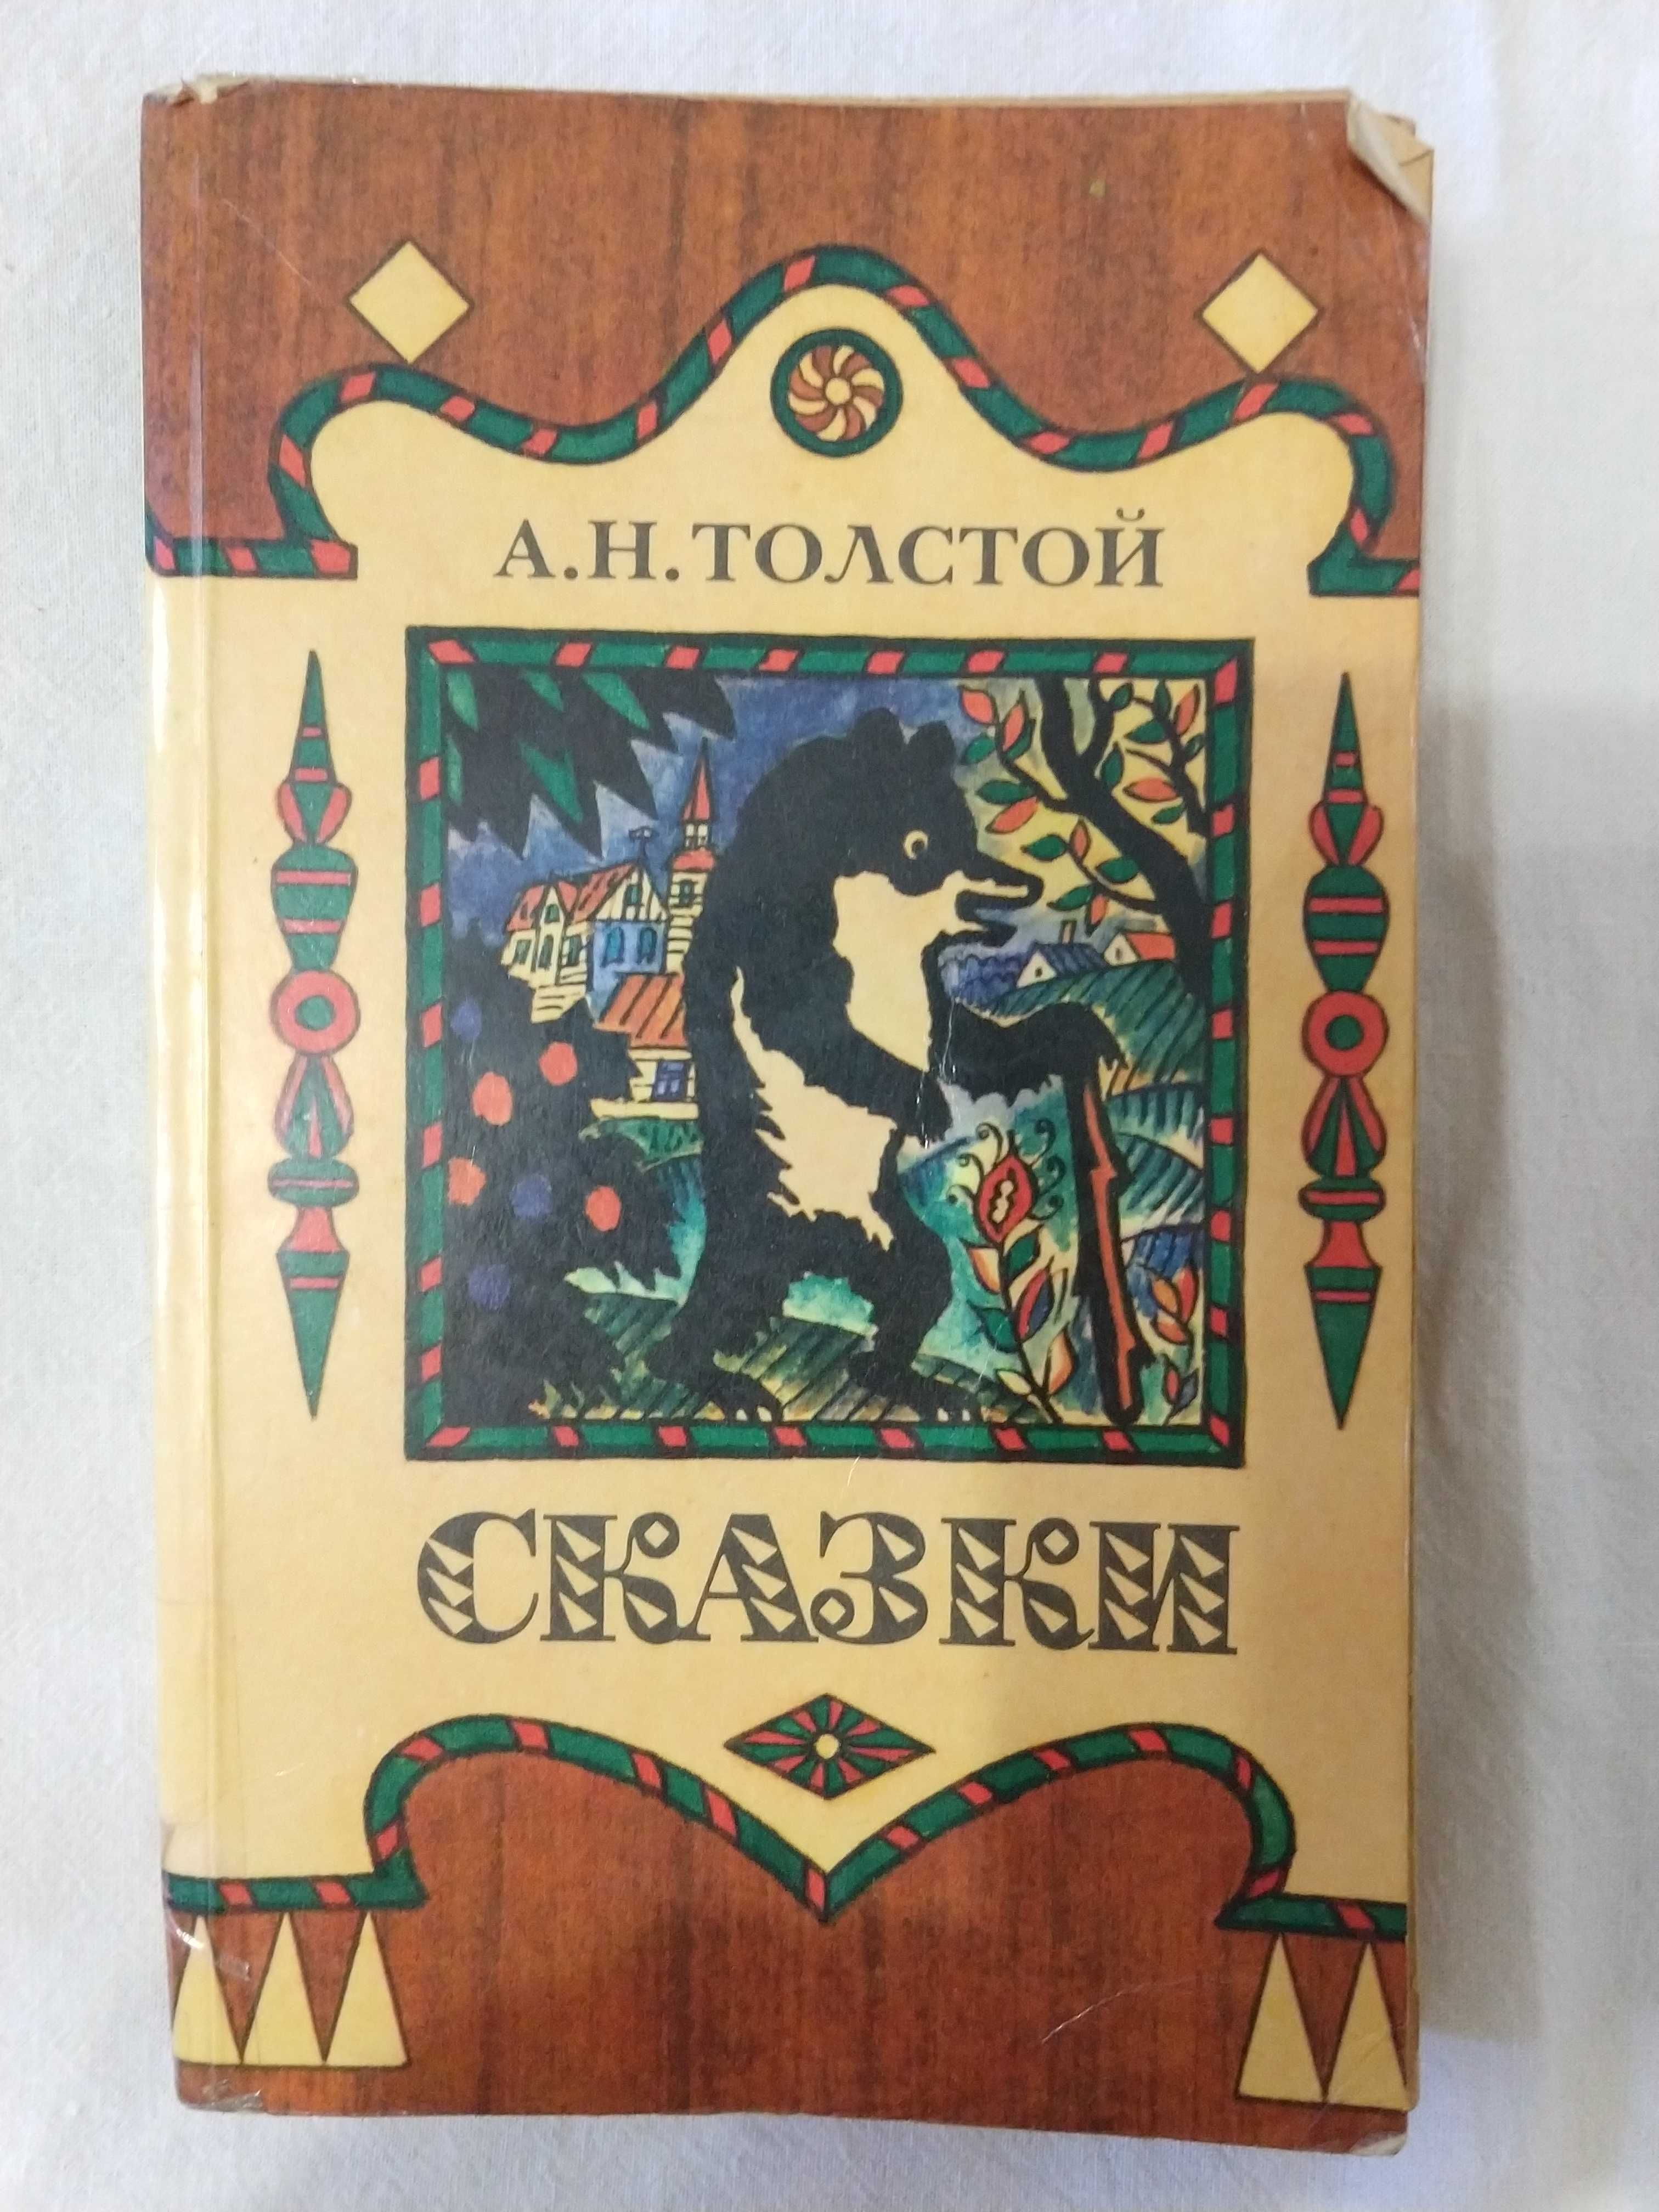 Детская книга Сказки А.Н.Толстого. Буратино и др. На русском языке